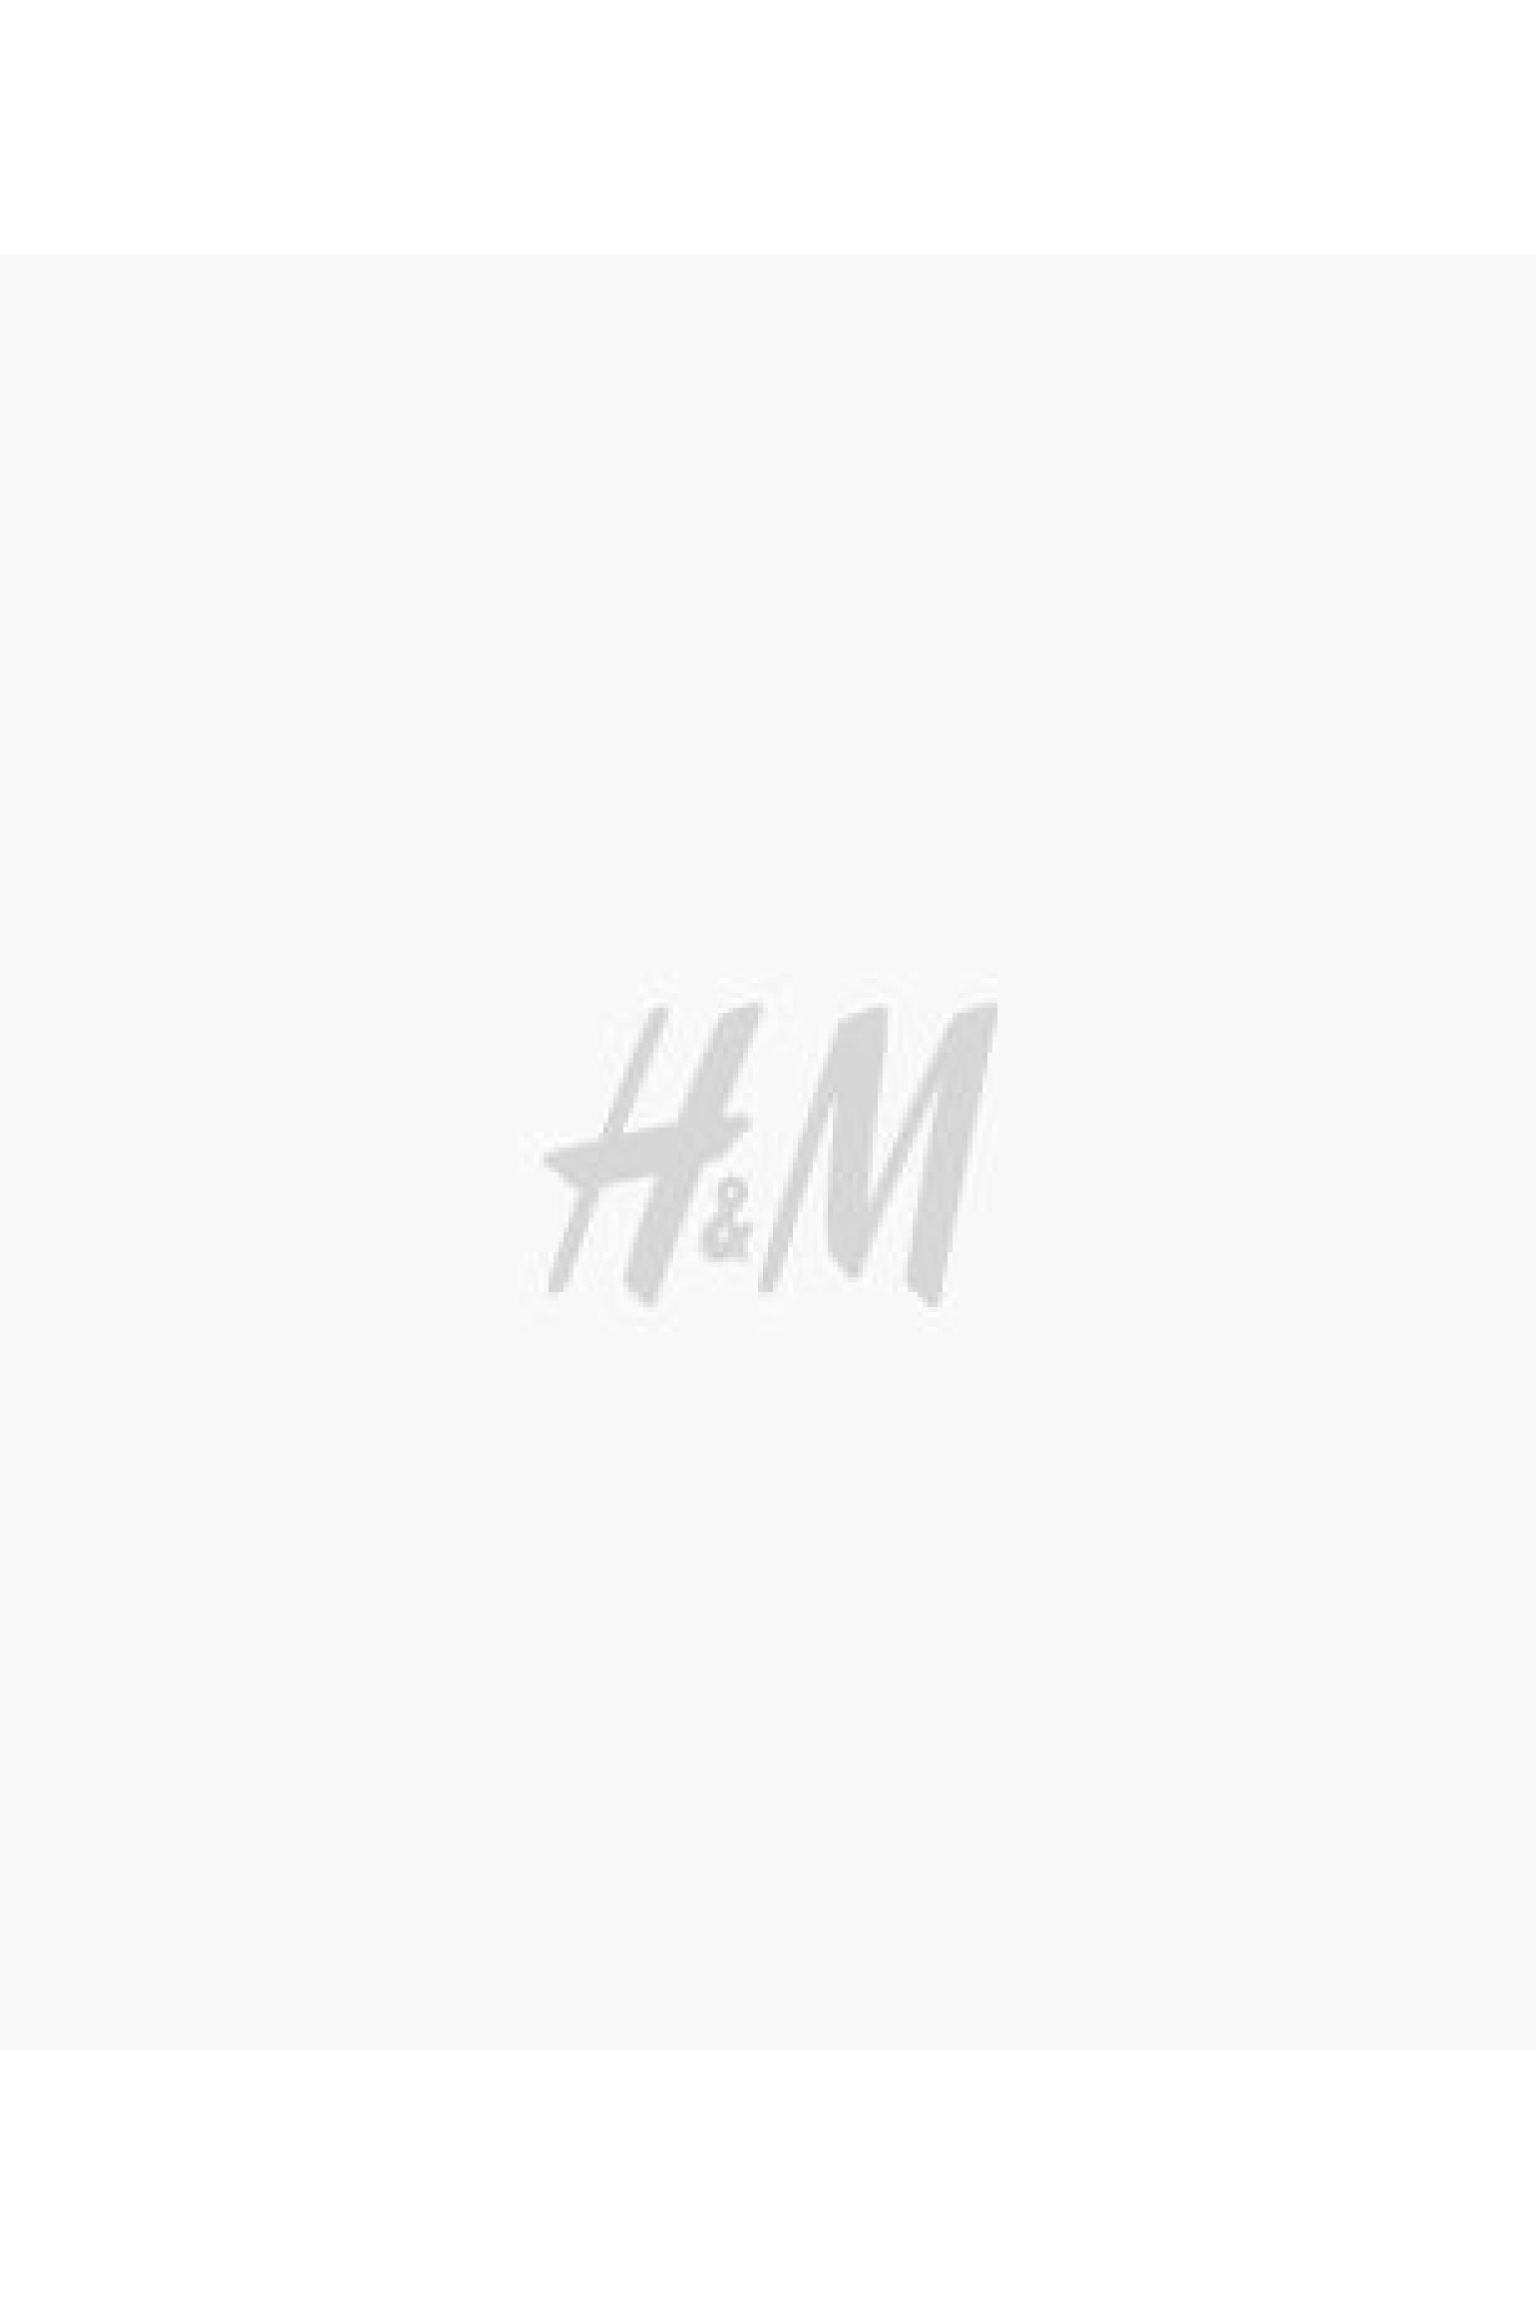 에이치앤엠 H&M Double-layer Running Shorts